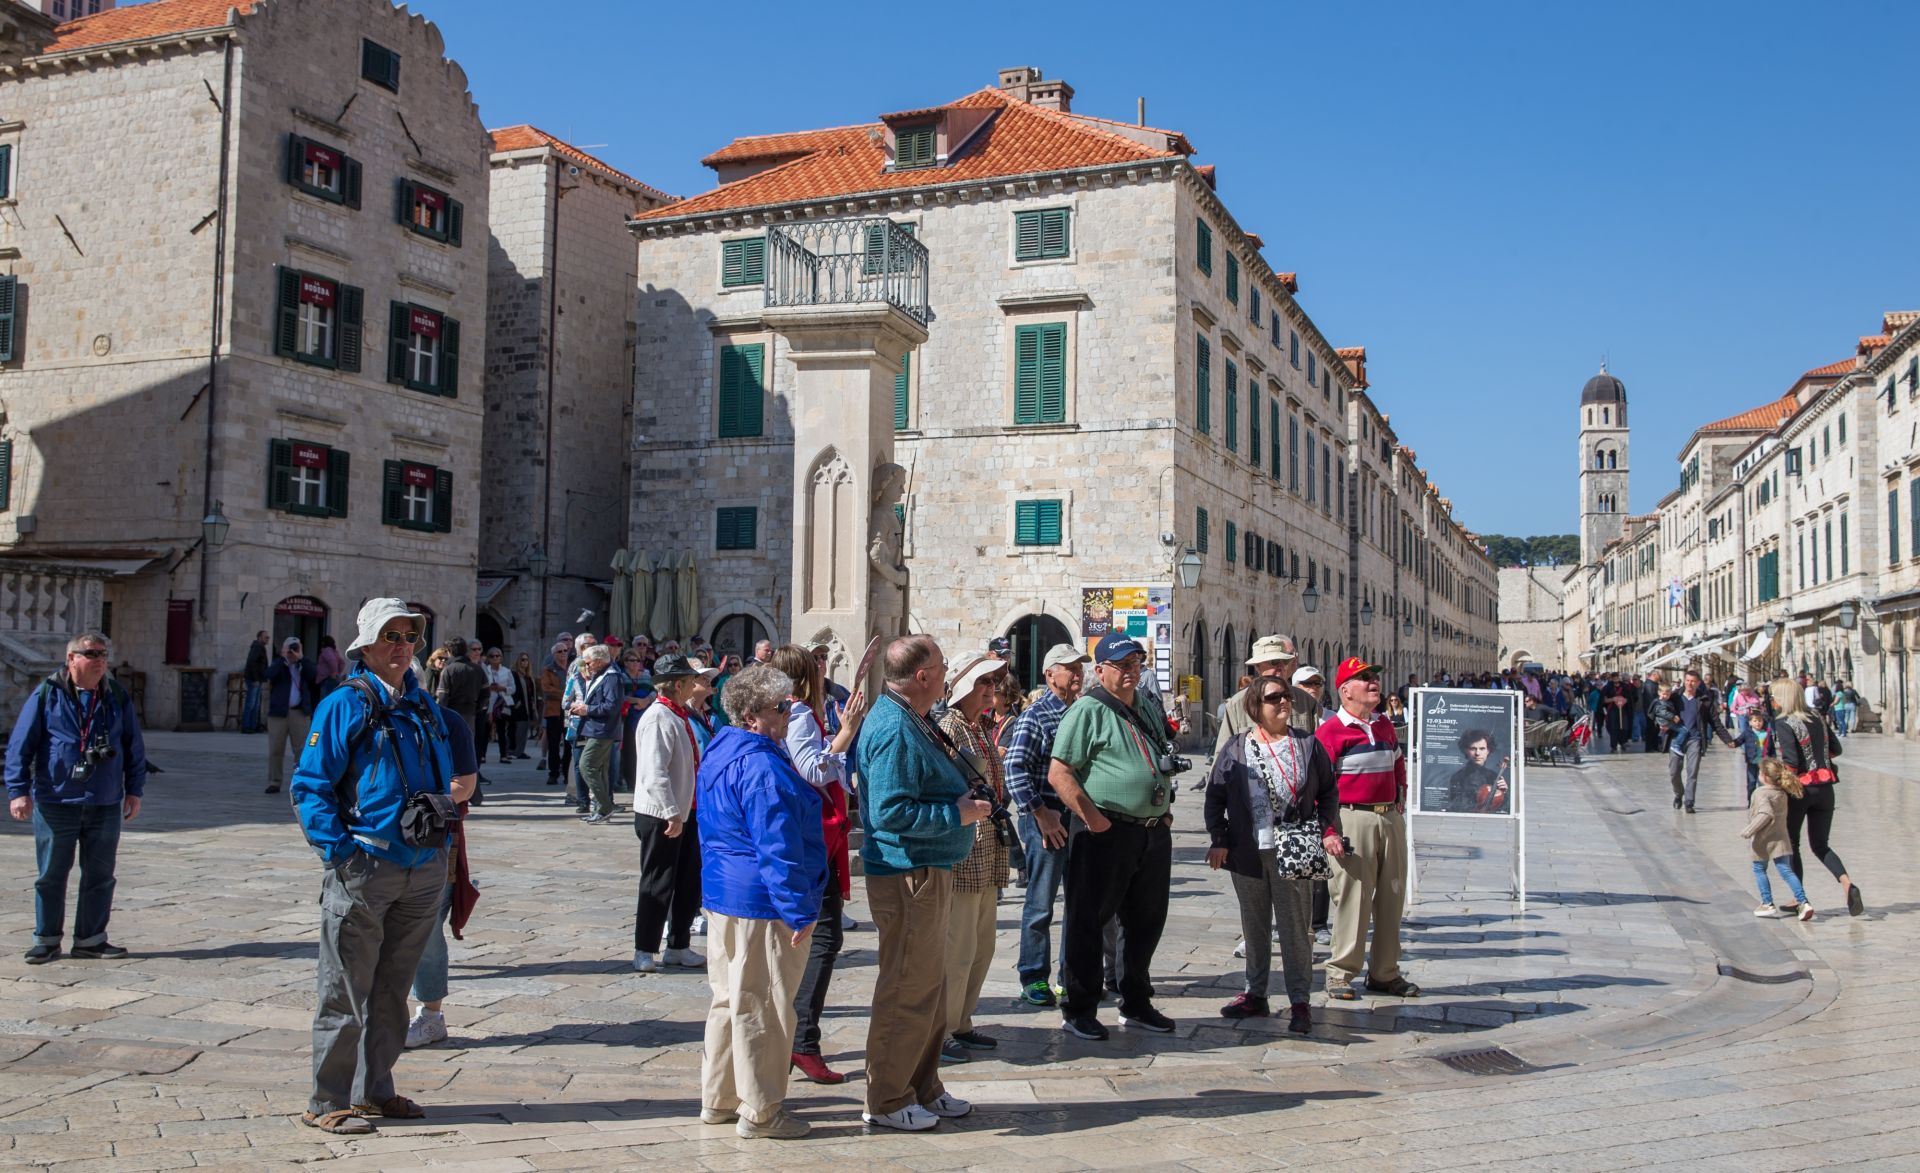 14.03.2017., Stara gradska jezgra, Dubrovnik - Prvi ovogodisnji kruzer ispunio je gradsku jezgru turistima.
Photo: Grgo Jelavic/PIXSELL